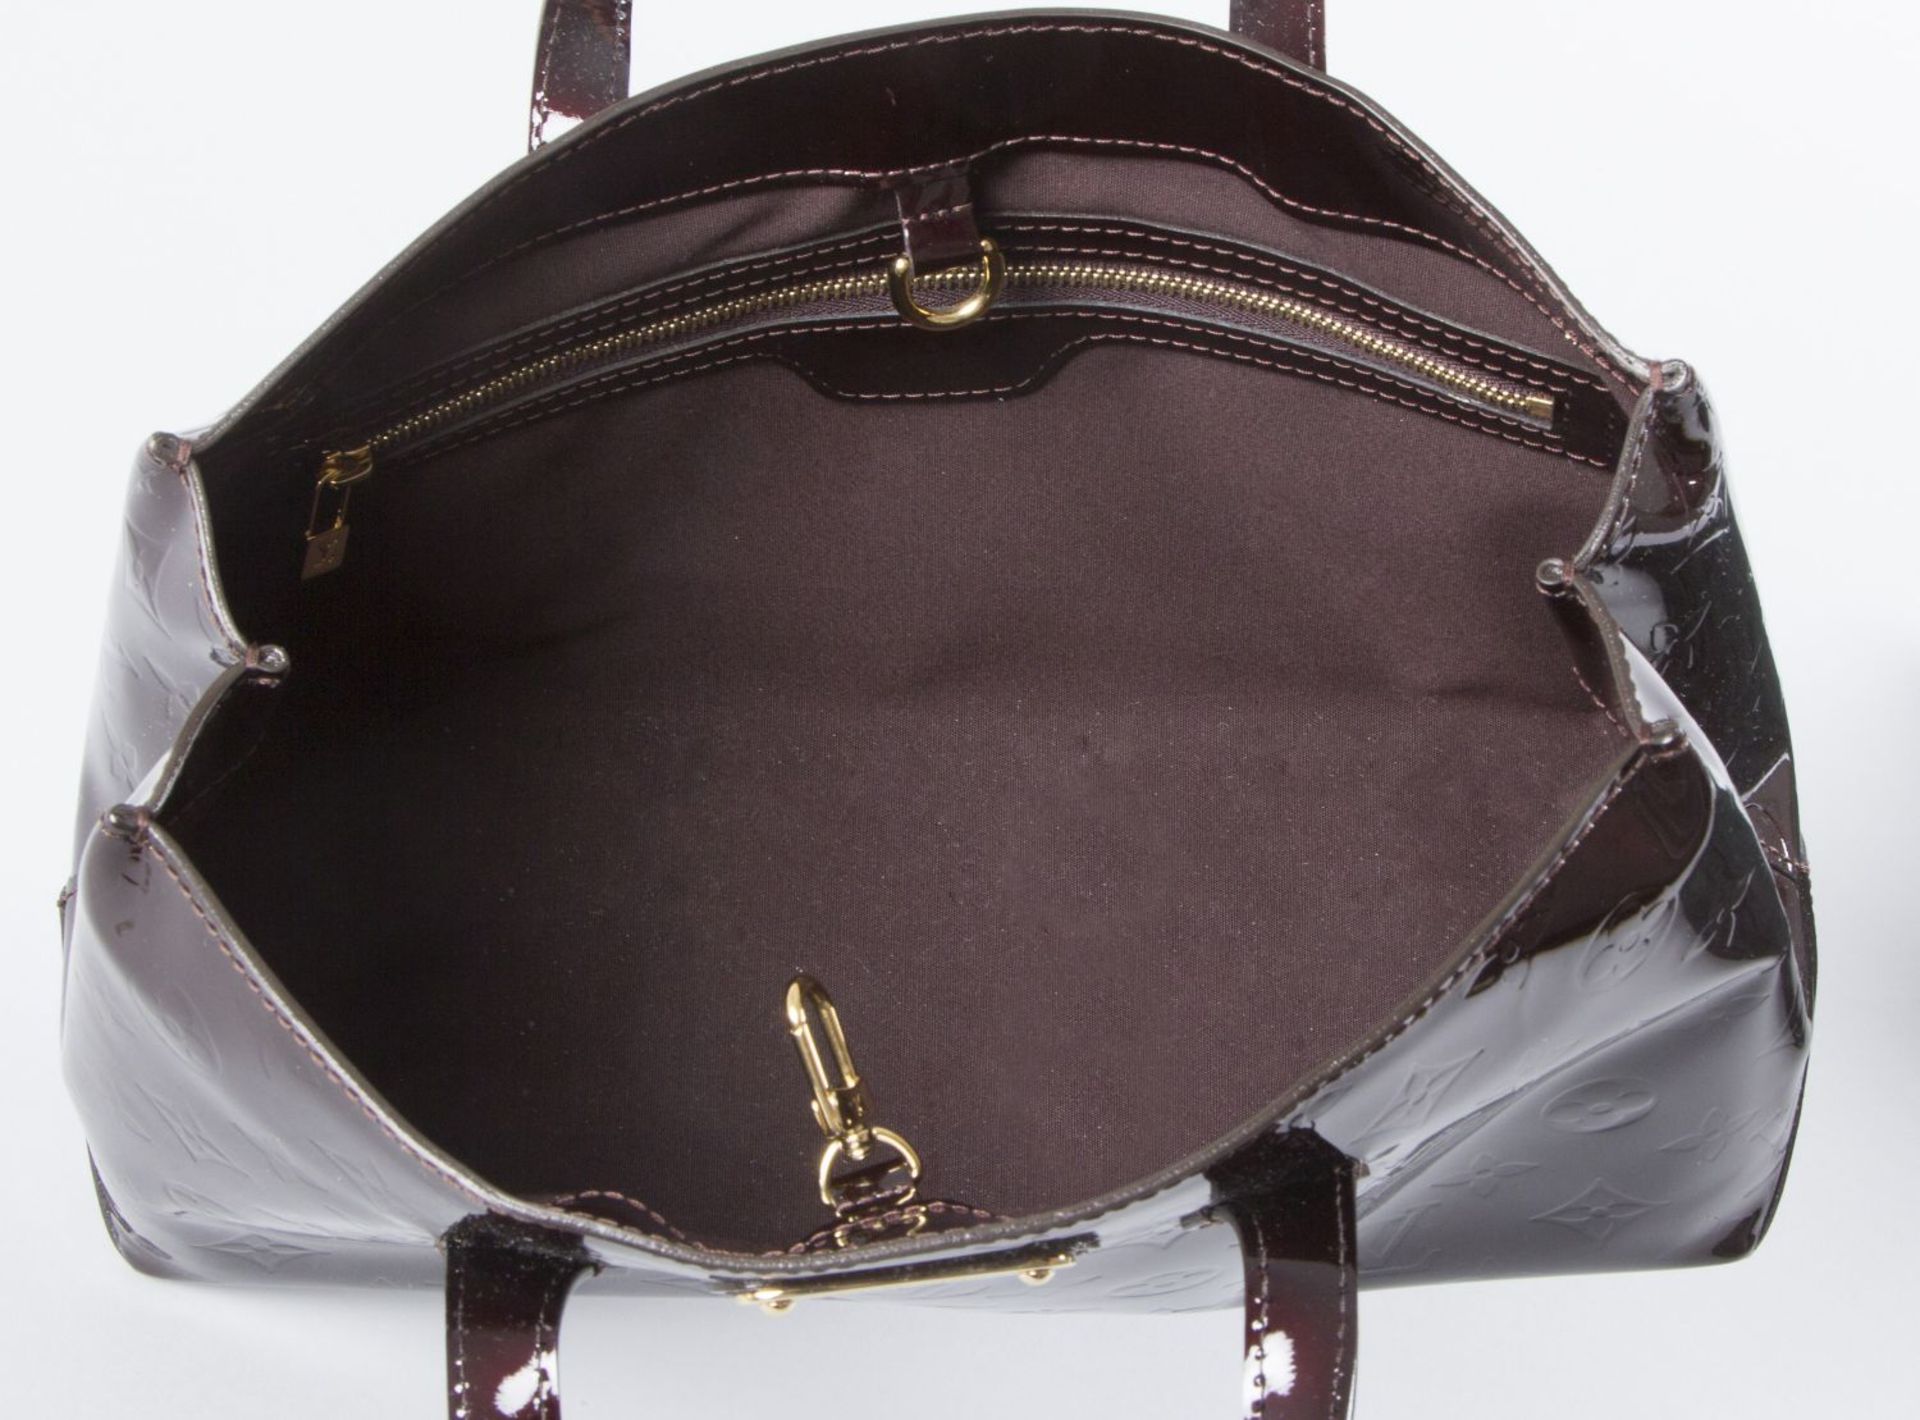 Louis Vuitton "Vernis Wilshire PM" HandtascheBraunes Lackleder mit Monogramm-Prägedruck. Logo-Schild - Bild 2 aus 3